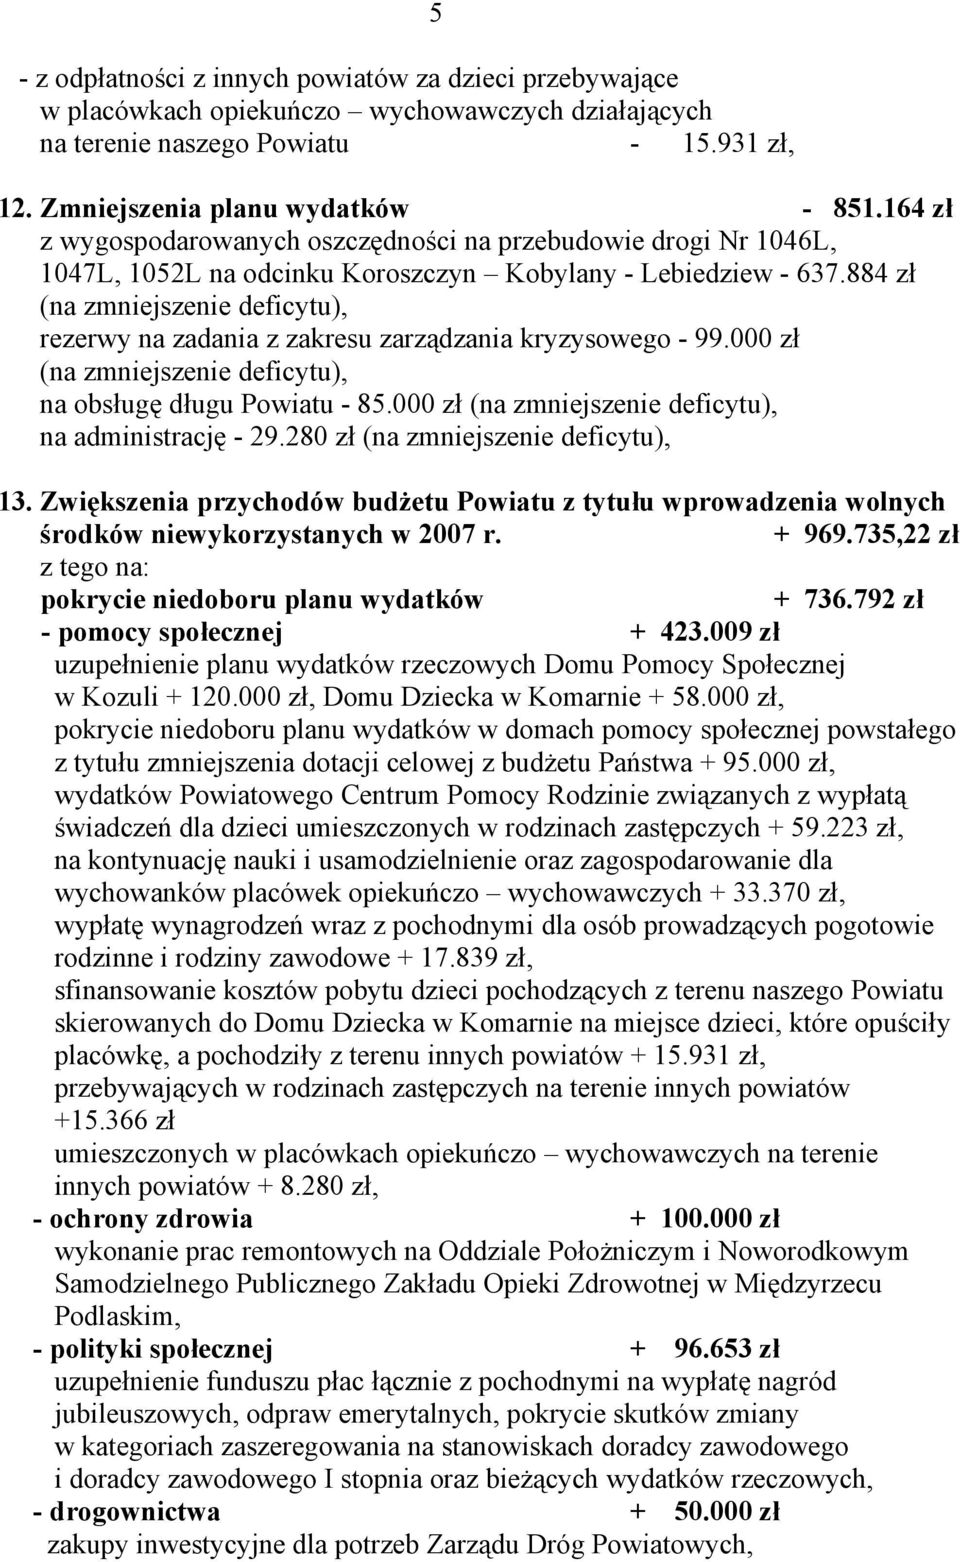 884 zł (na zmniejszenie deficytu), rezerwy na zadania z zakresu zarządzania kryzysowego - 99.000 zł (na zmniejszenie deficytu), na obsługę długu Powiatu - 85.